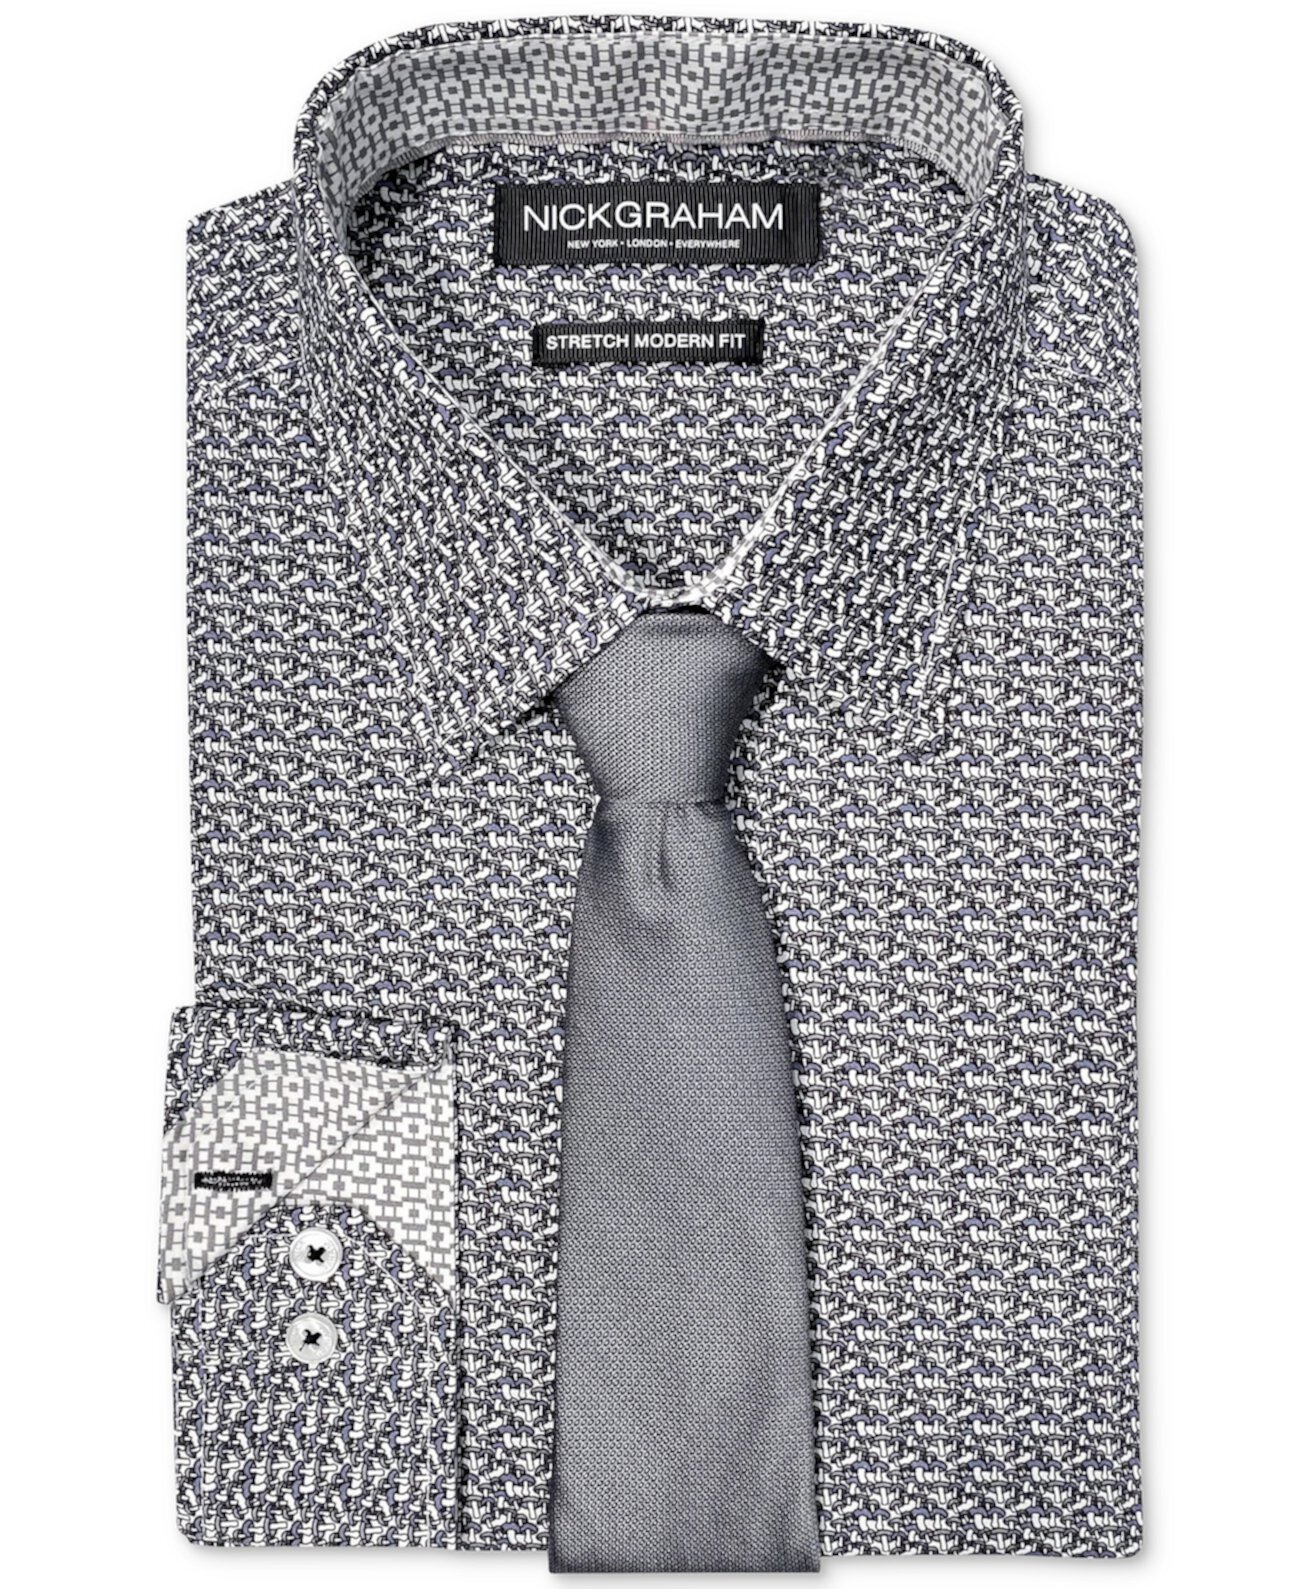 Мужской облегающий комплект из эластичной классической рубашки с грибным принтом и узкого галстука Nick Graham